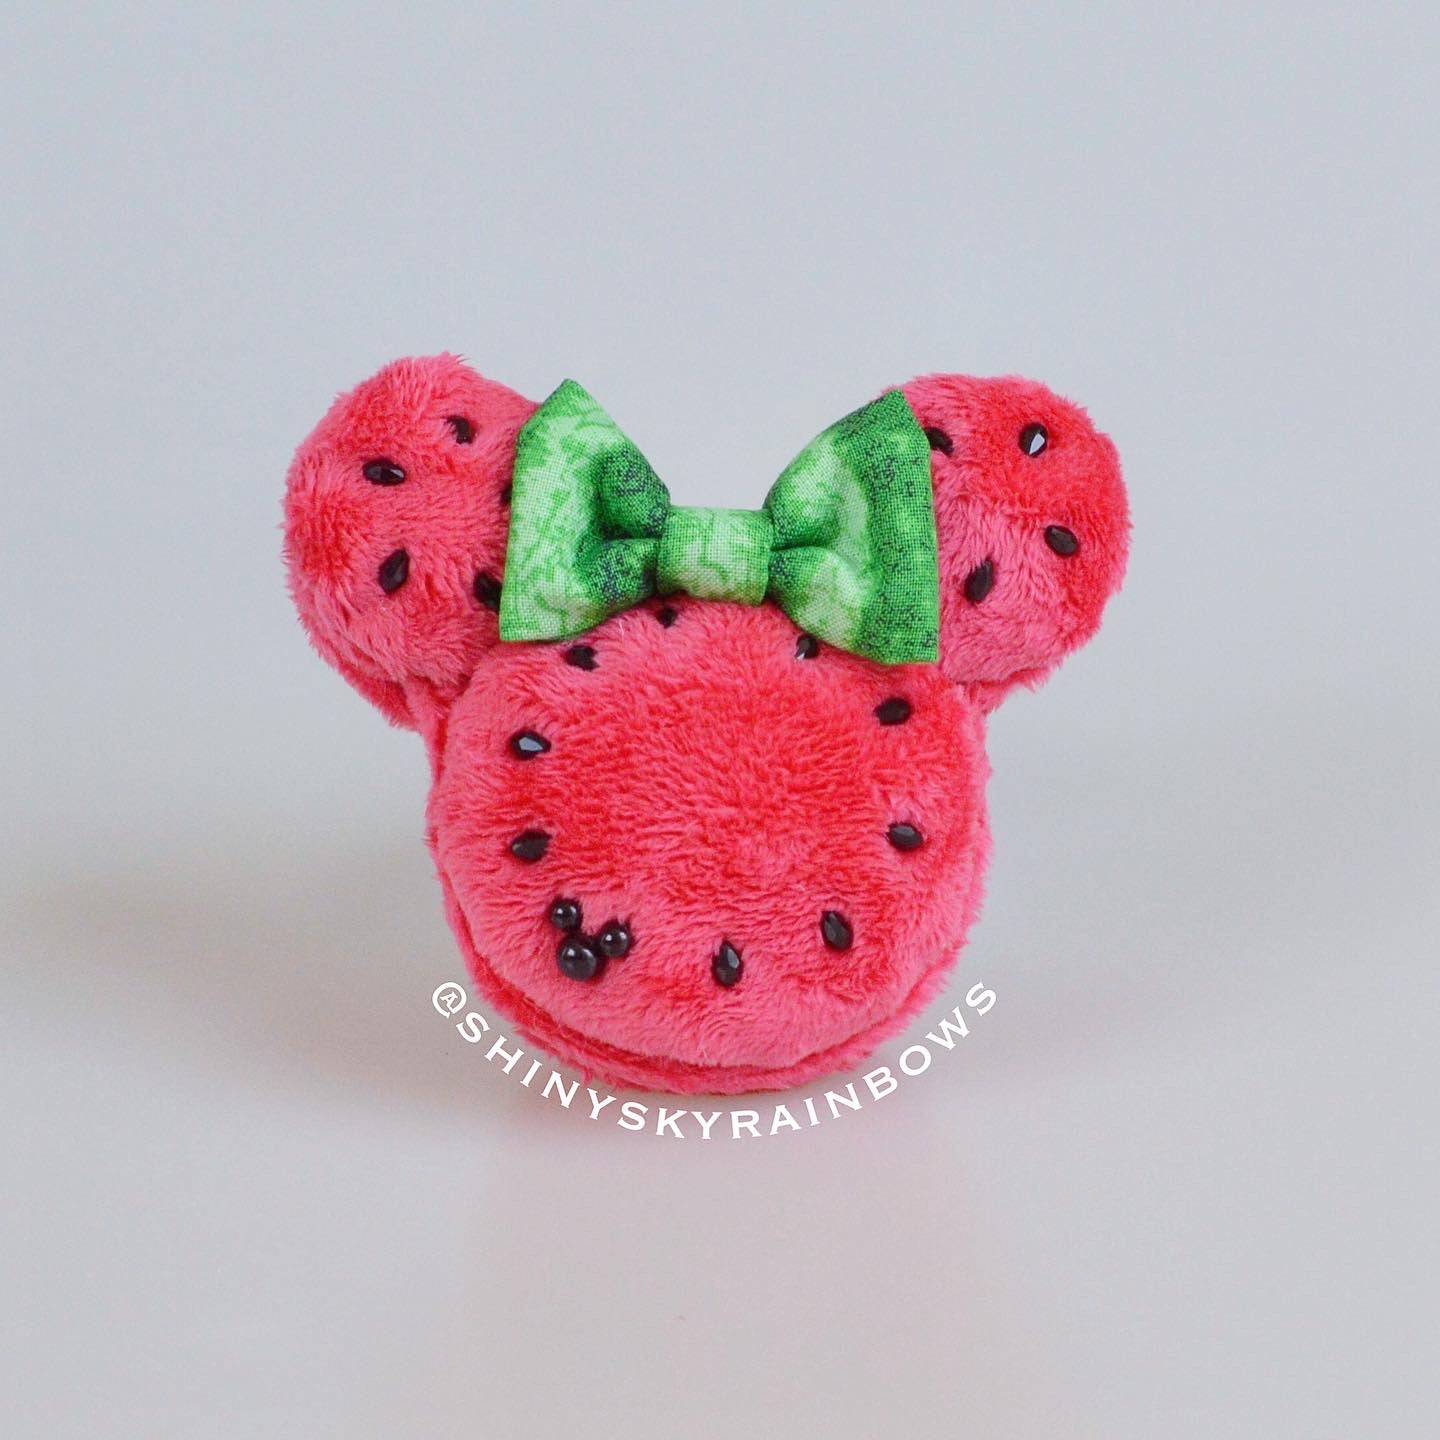 Watermelon Macaron Plush accessory